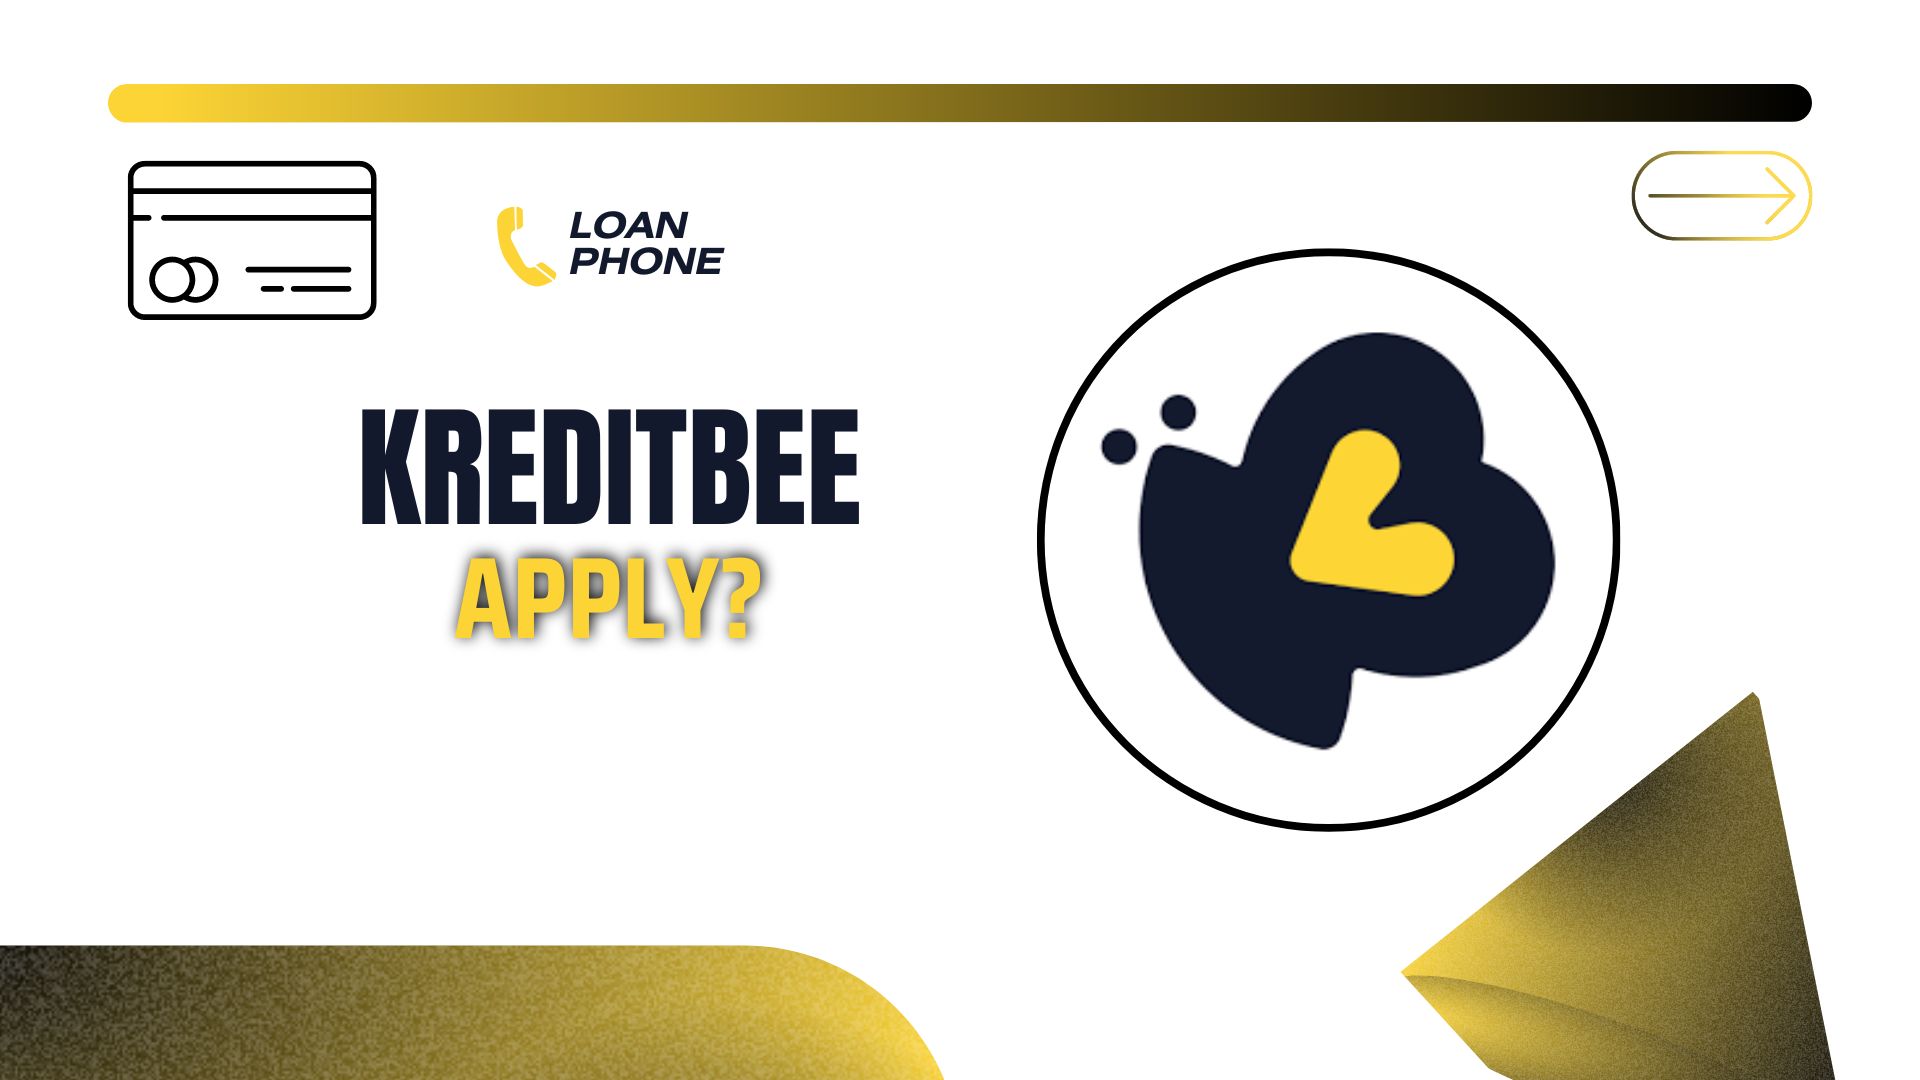 KreditBee Loan App से लोन कैसे लें?